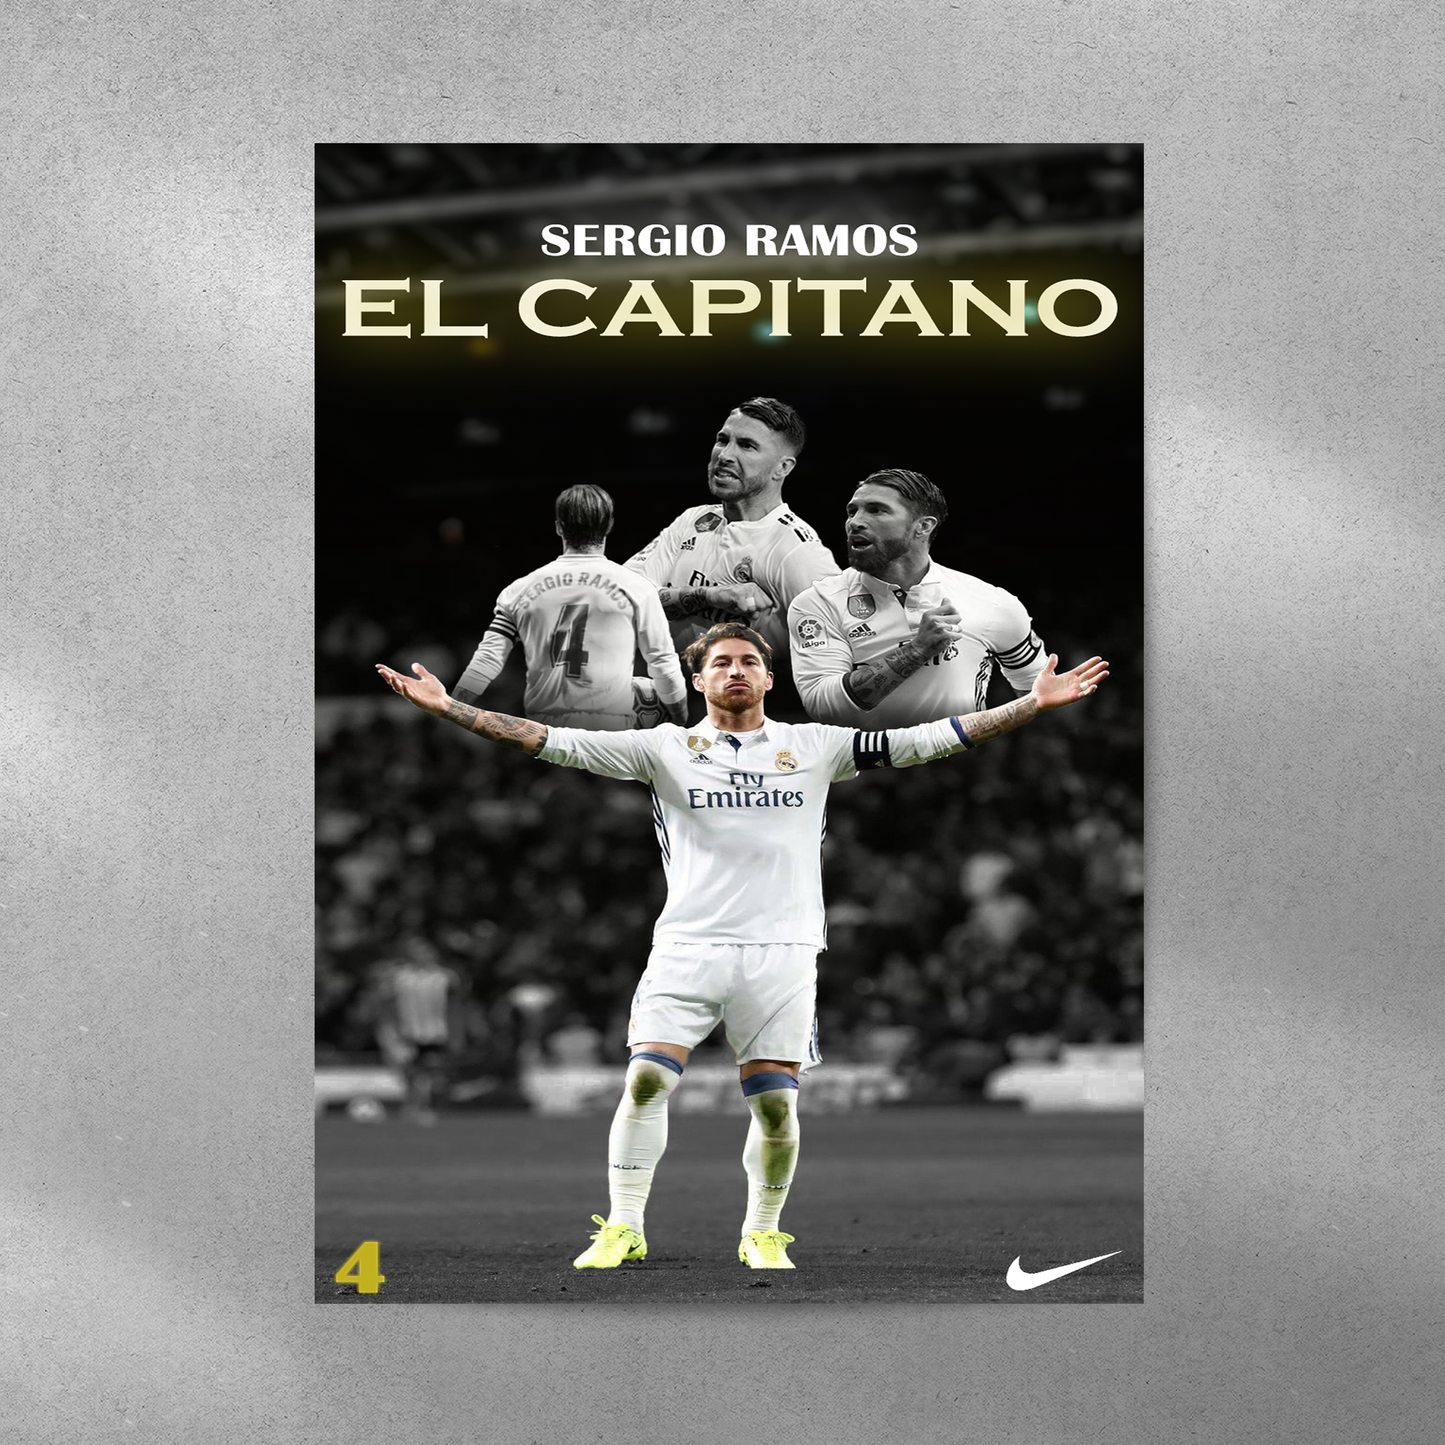 Sergio Ramos: El Capitano